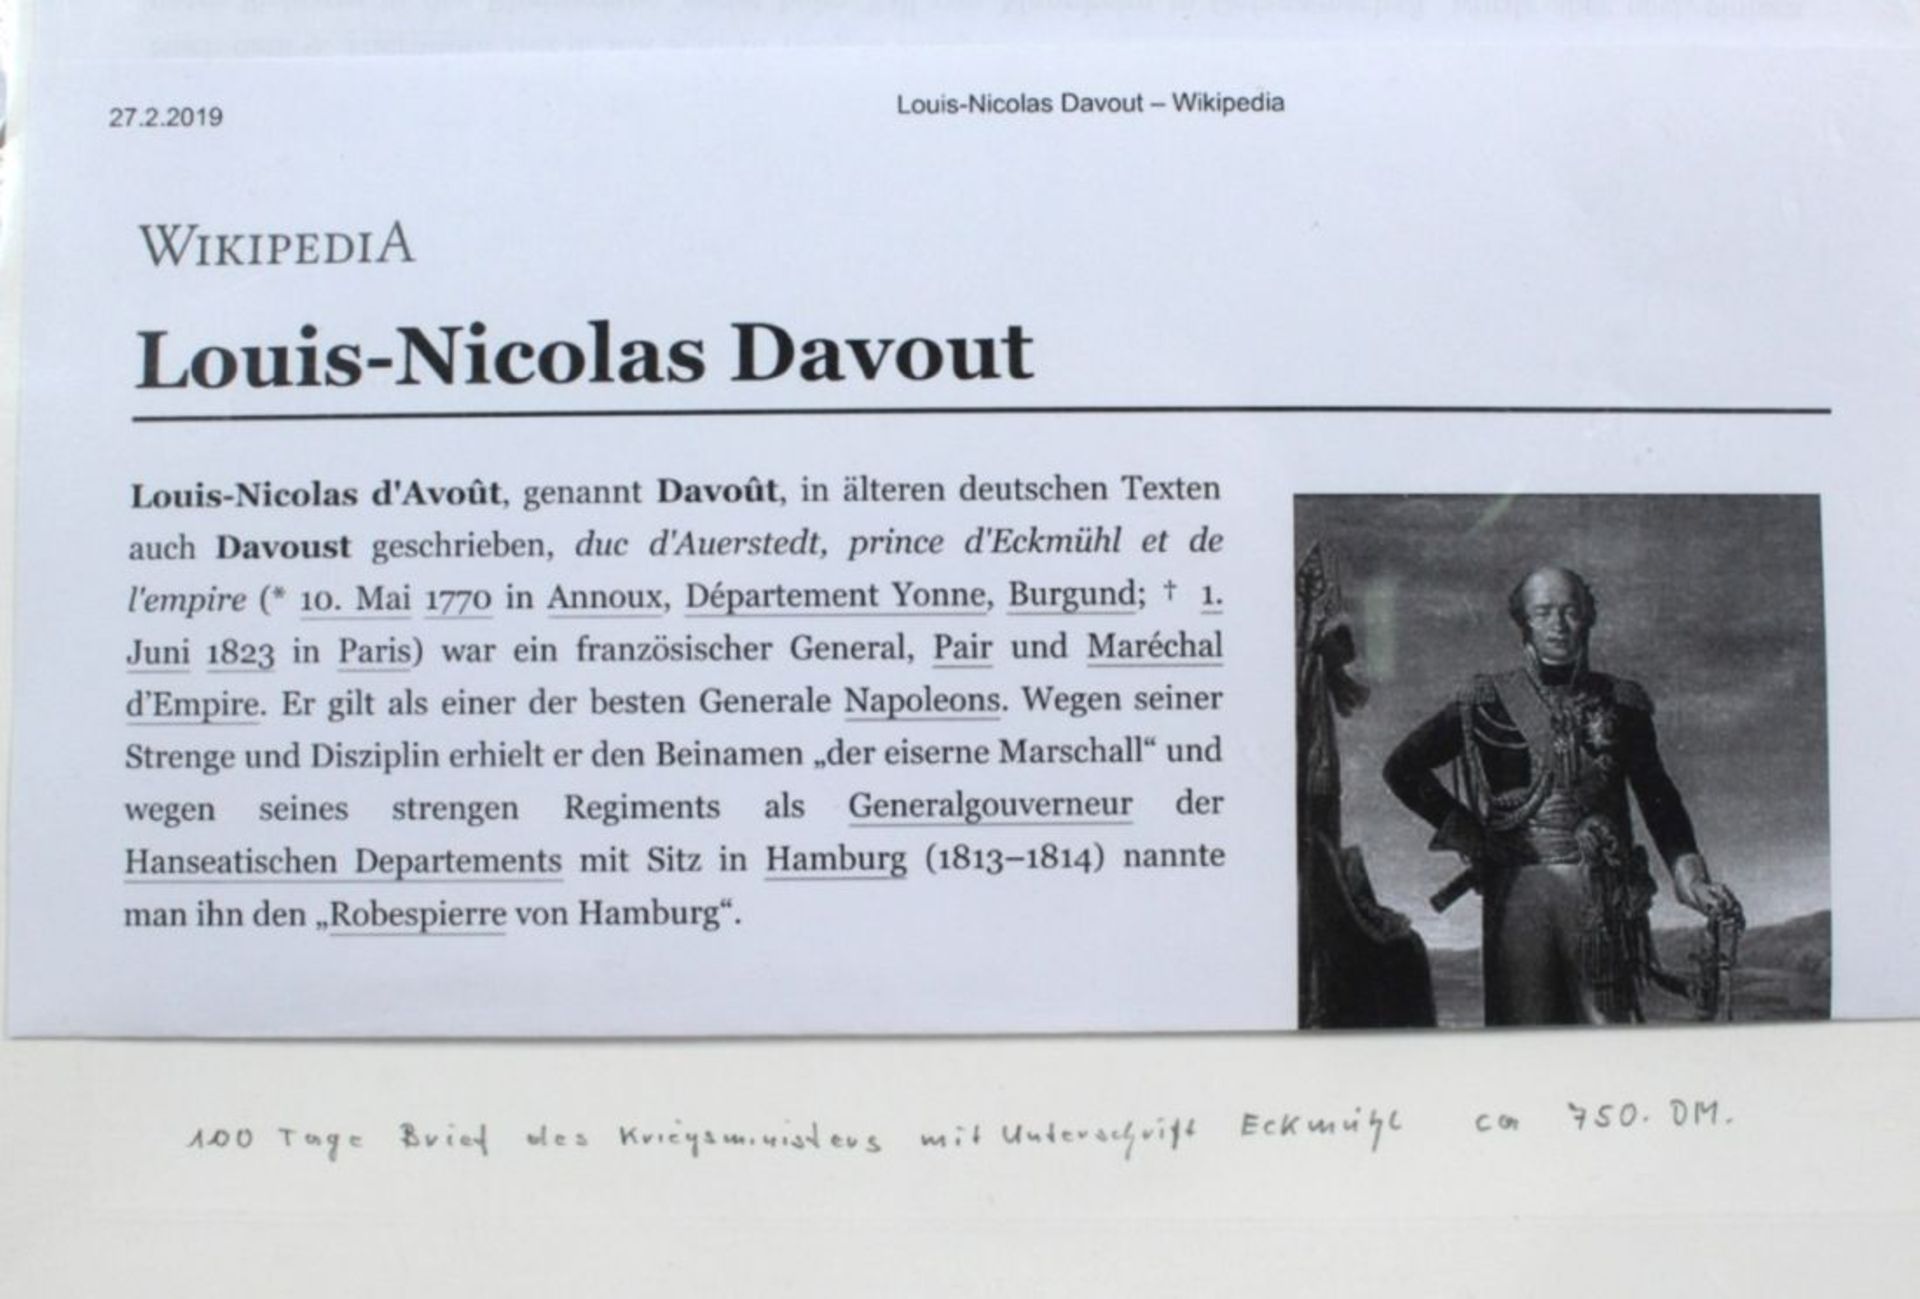 Historisches Dokument, 1819, Brief des Kriegsministers Louis-Nicolas Davout, princed'Eckmühl mit - Bild 2 aus 2